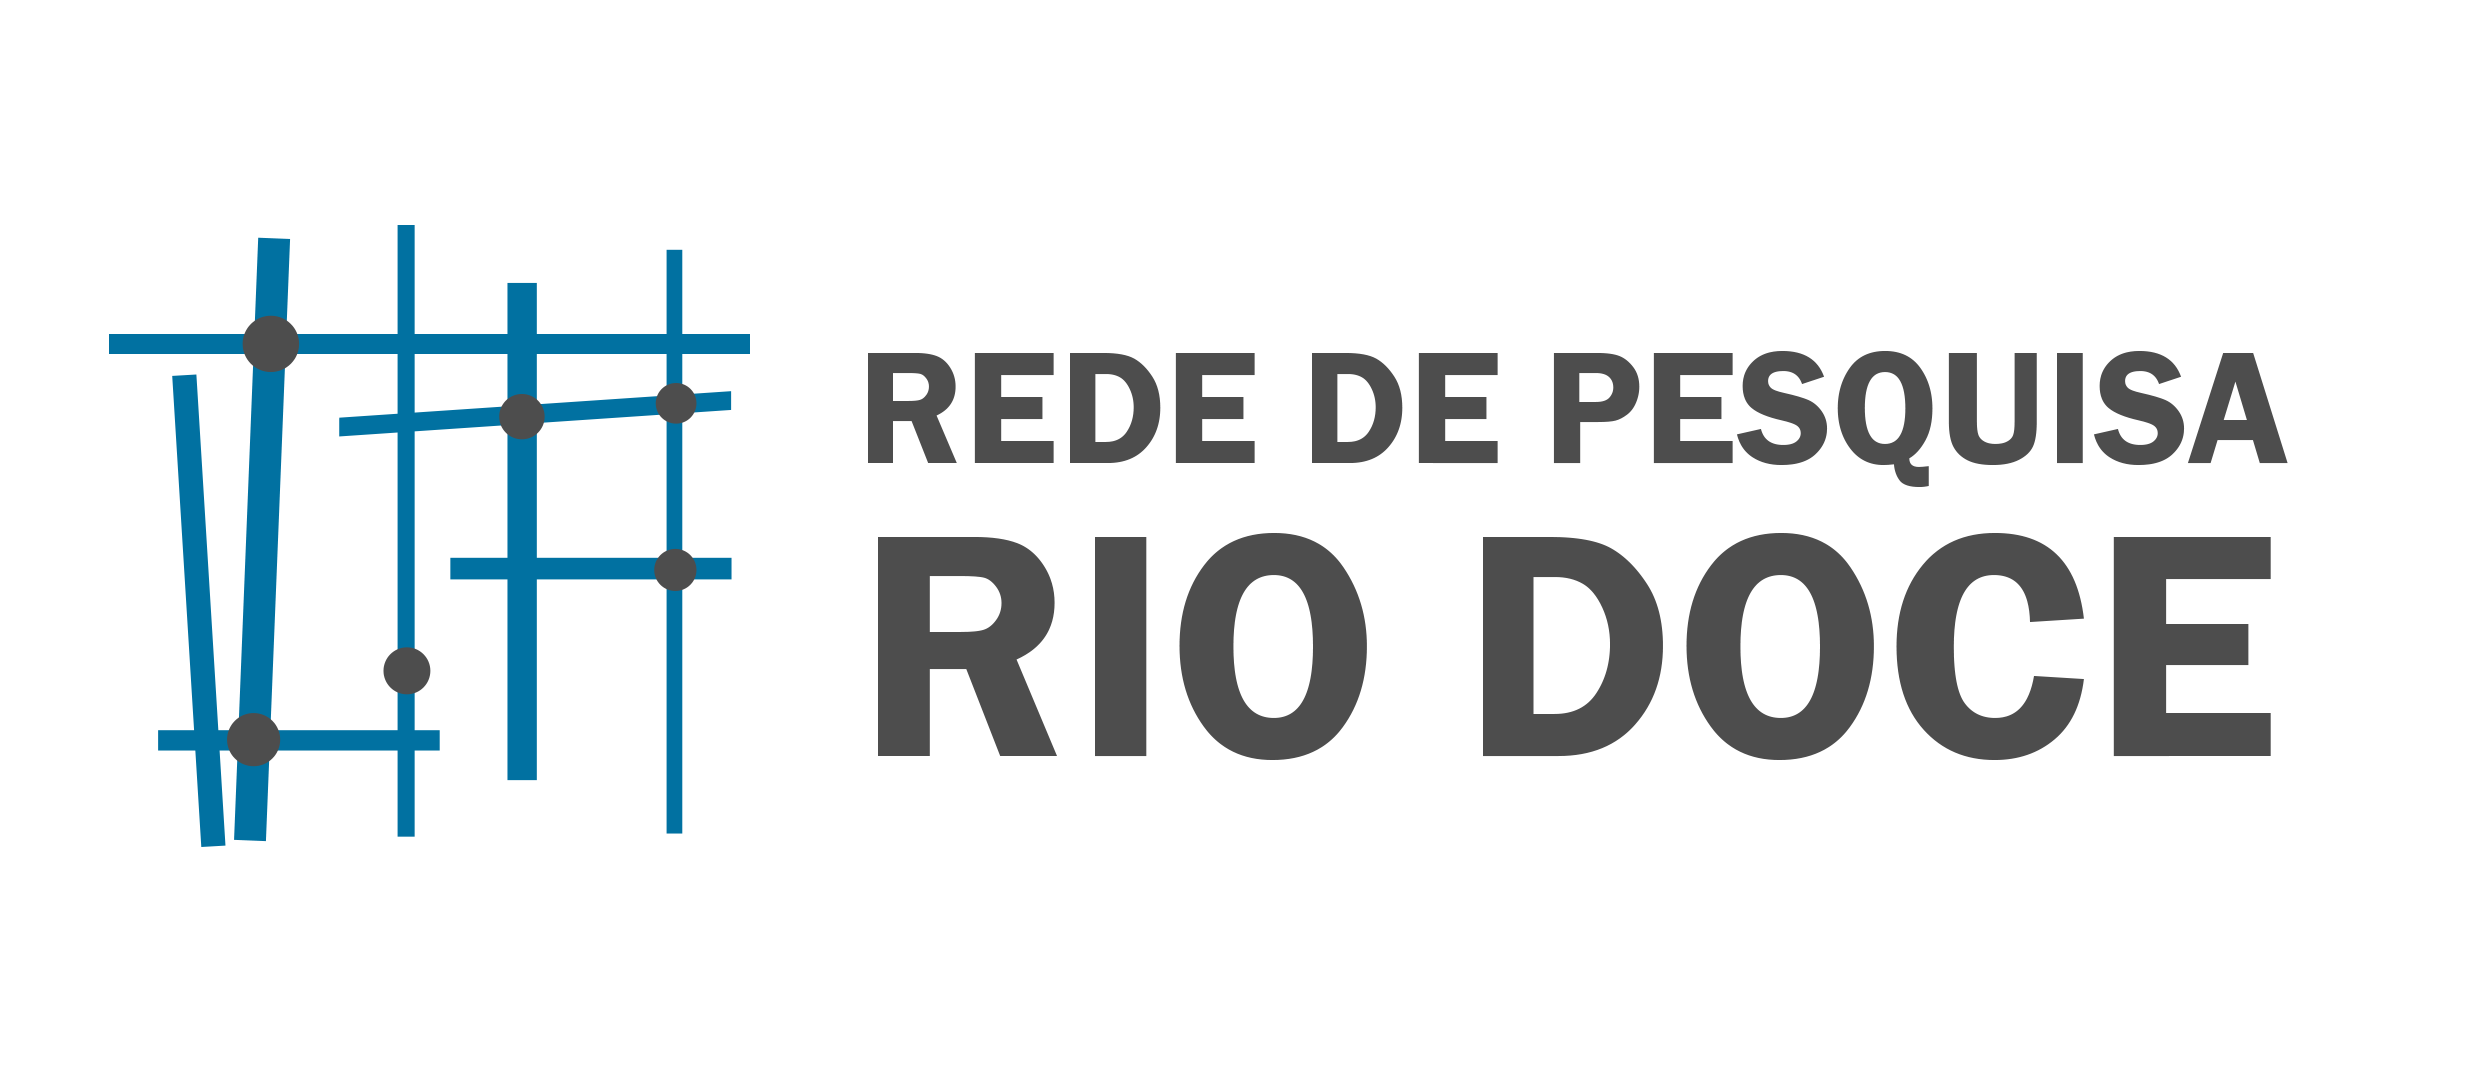 Rede de Pesquisa Rio Doce